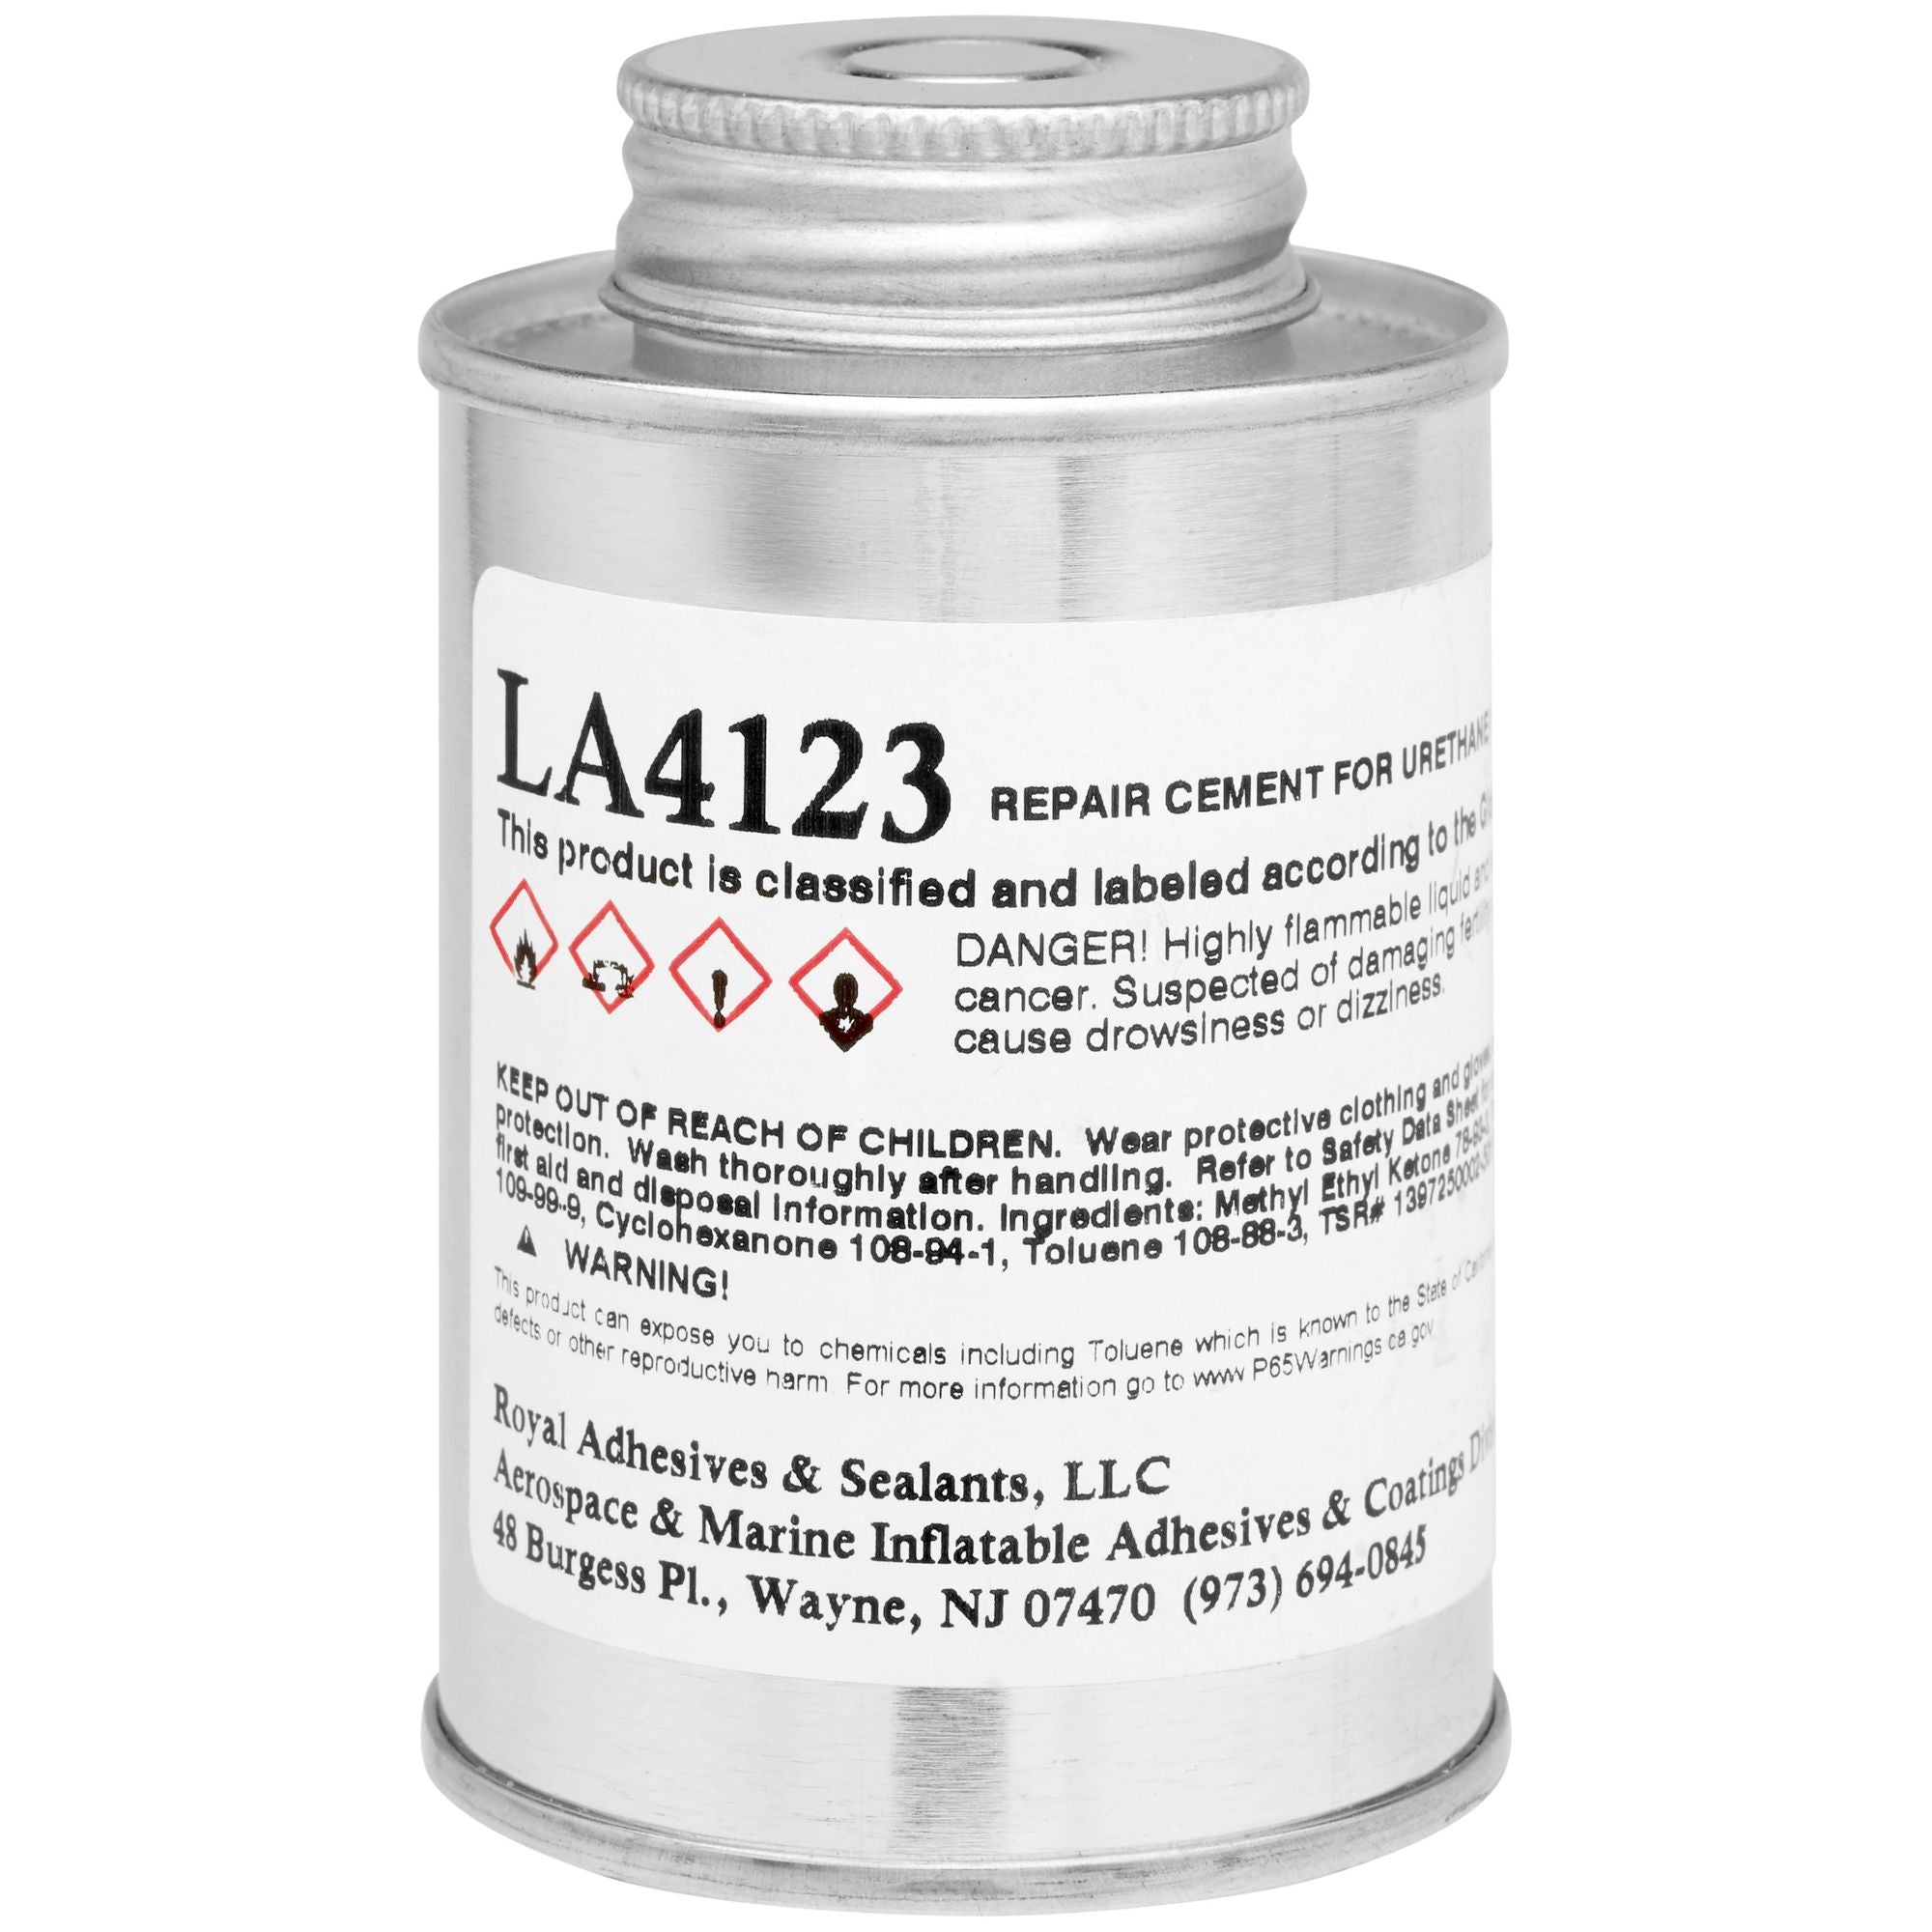 CLIFTON - Urethane Adhesive LA 4123